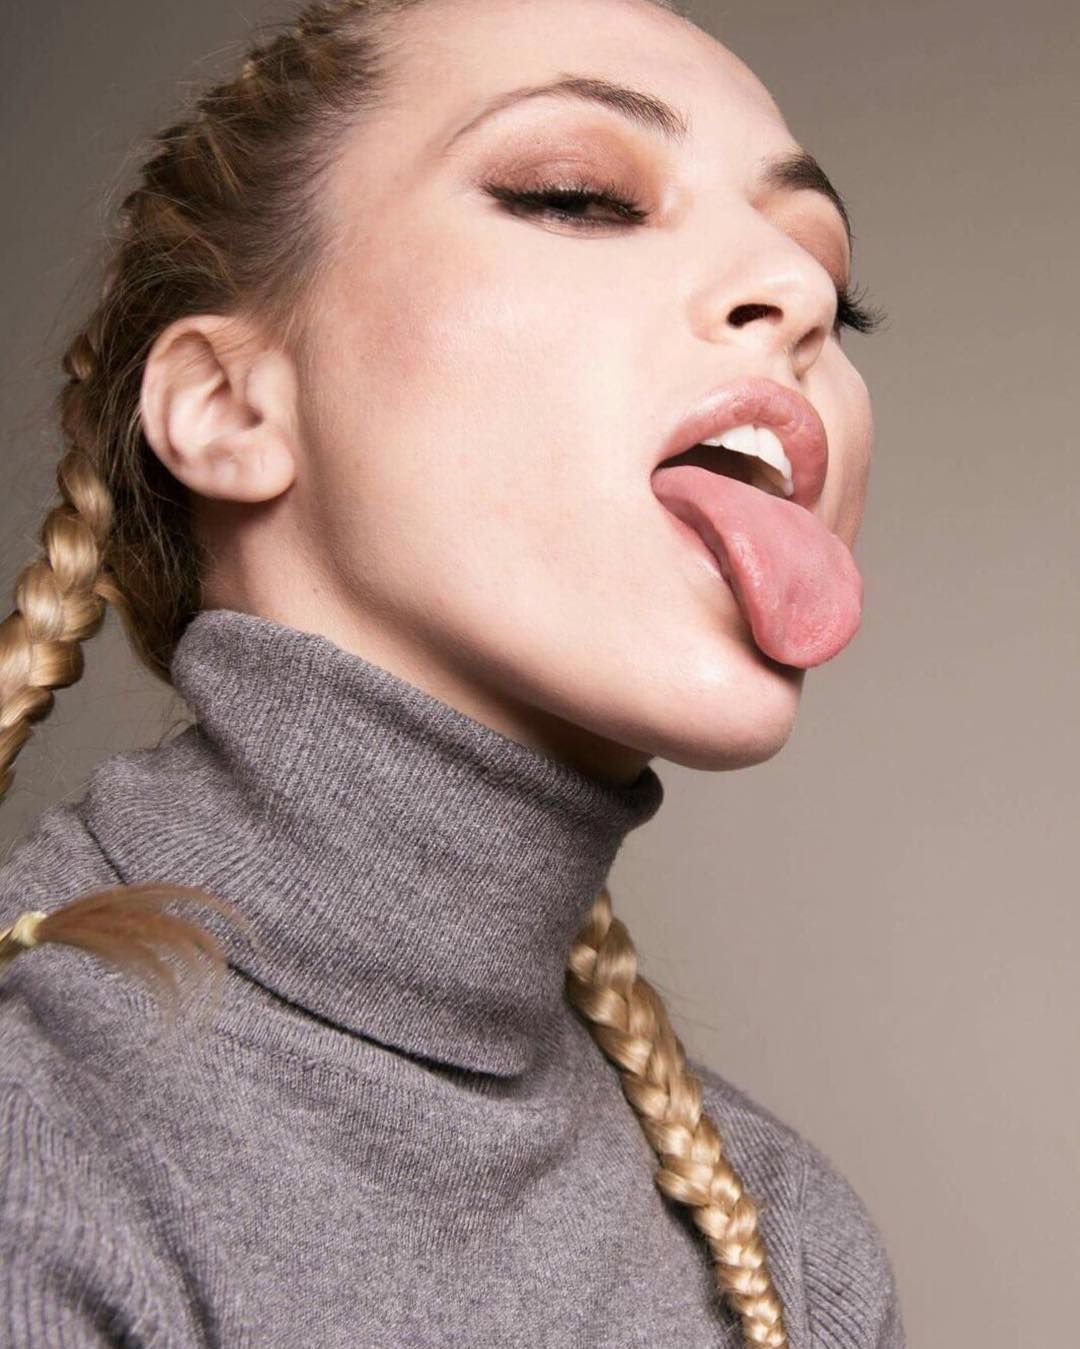 Tongue девочка